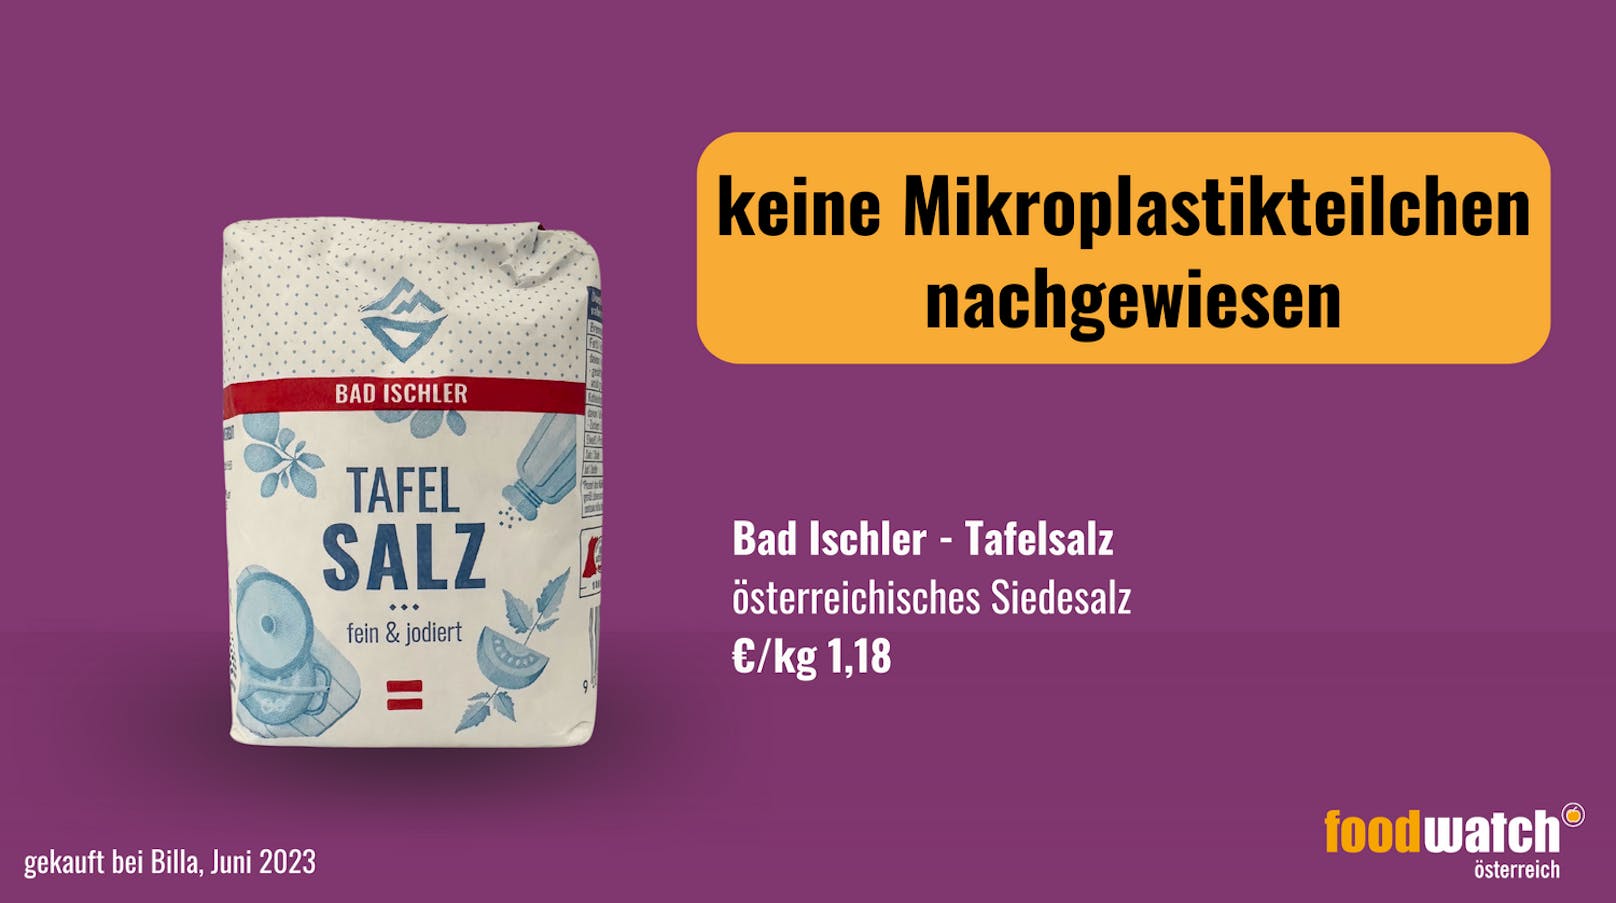 Bad Ischler Tafelsalz - kein Nachweis von Mikroplastik